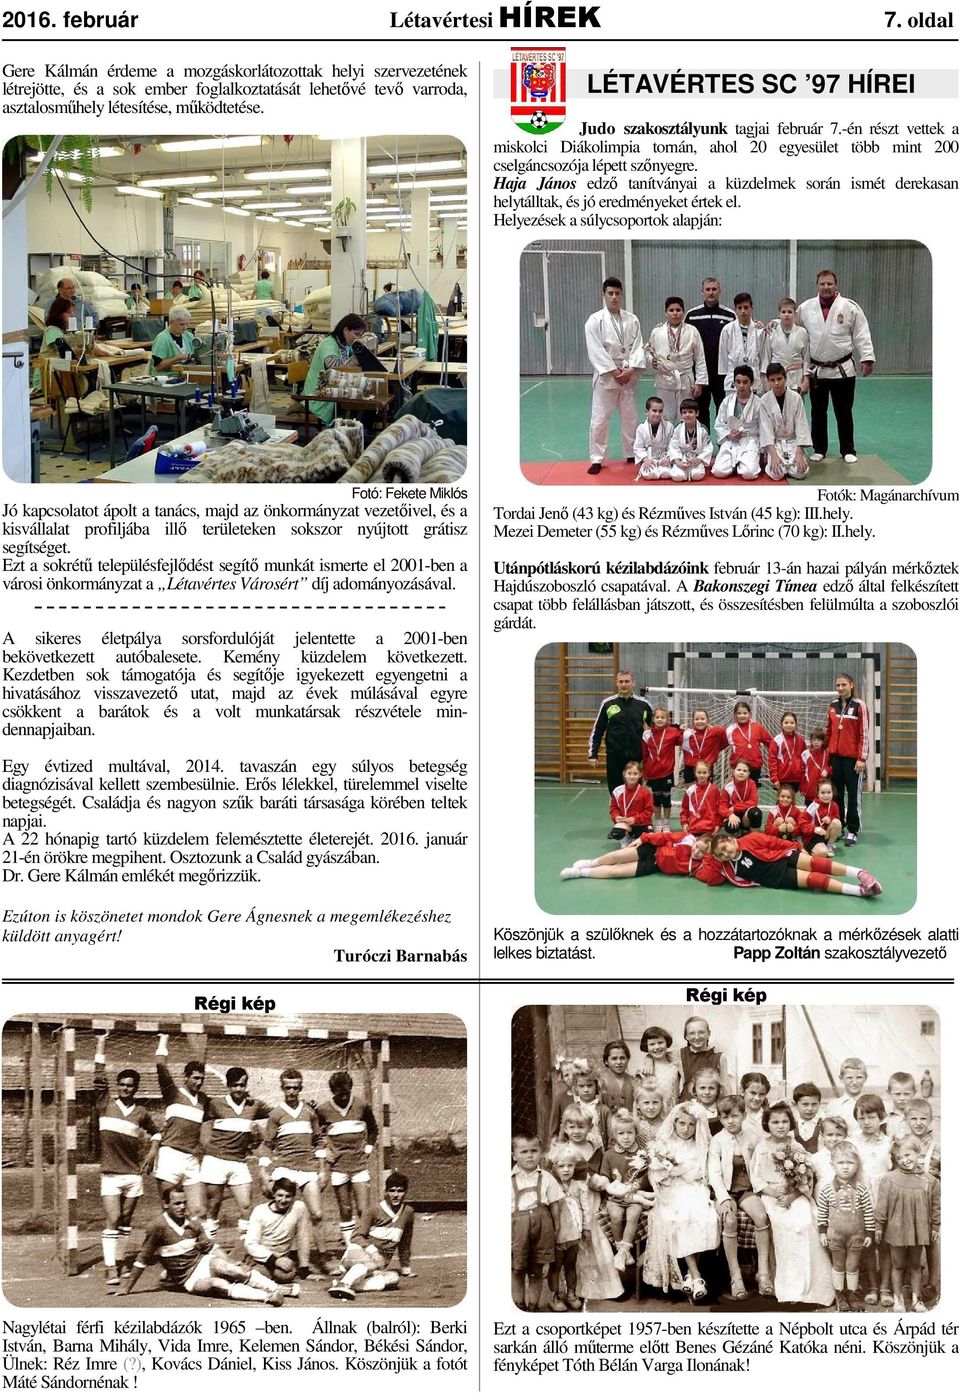 LÉTAVÉRTES SC 97 HÍREI Judo szakosztályunk tagjai február 7.-én részt vettek a miskolci Diákolimpia tornán, ahol 20 egyesület több mint 200 cselgáncsozója lépett szőnyegre.